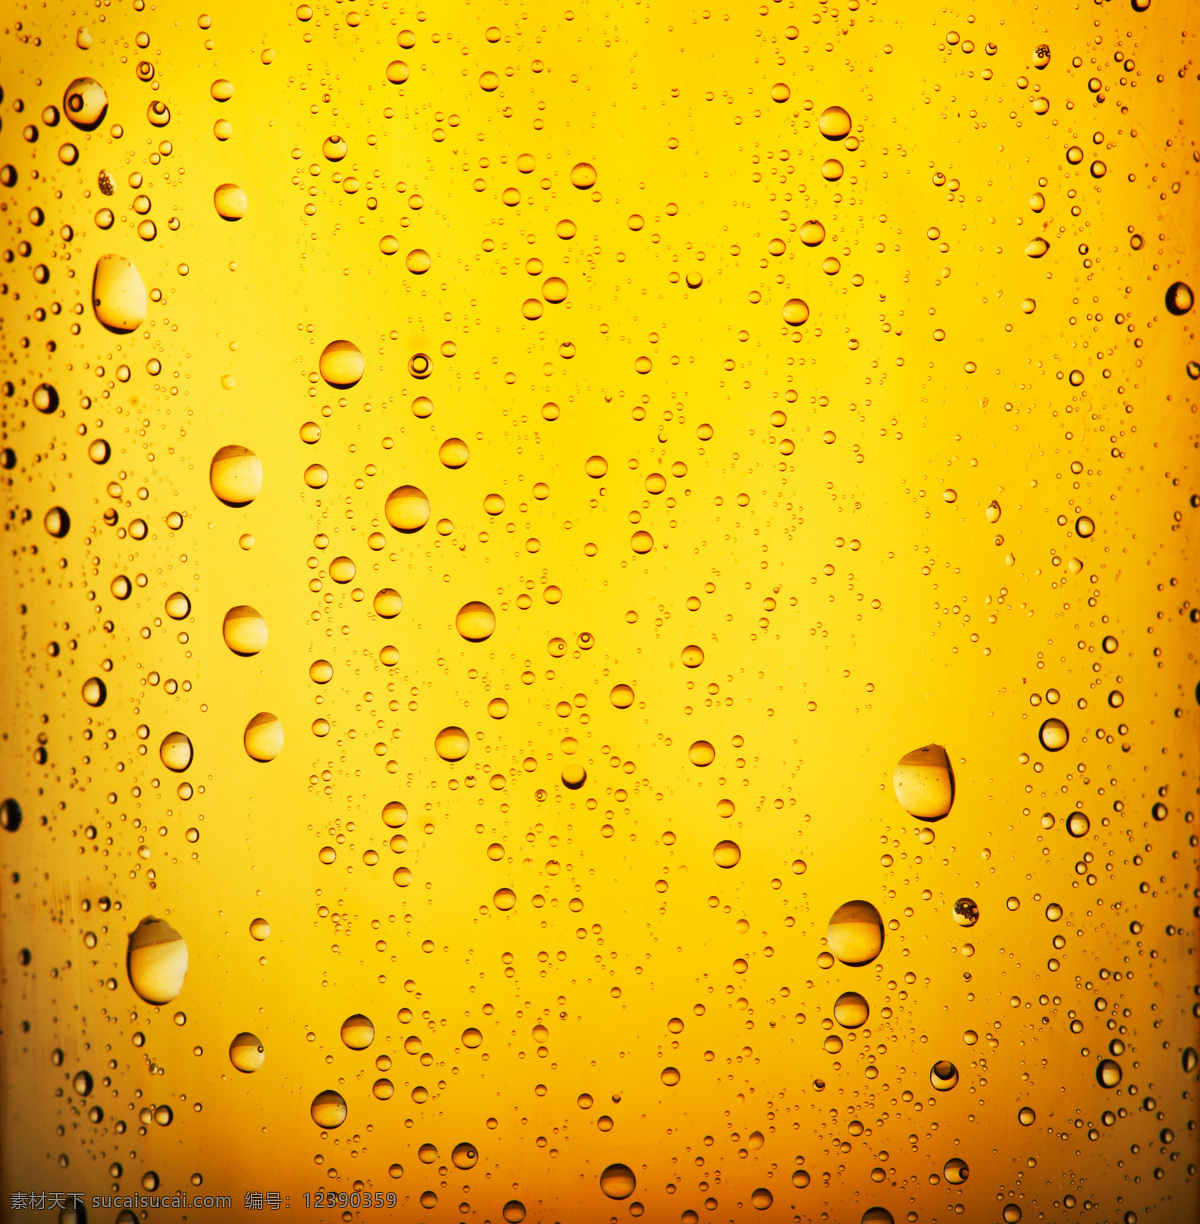 啤酒 放大 特写 图 一杯啤酒特写 饮料酒水 餐饮美食 啤酒特写图 啤酒图 实用图片 精美图片 印刷适用 高清图片 创意图片 酒类图片